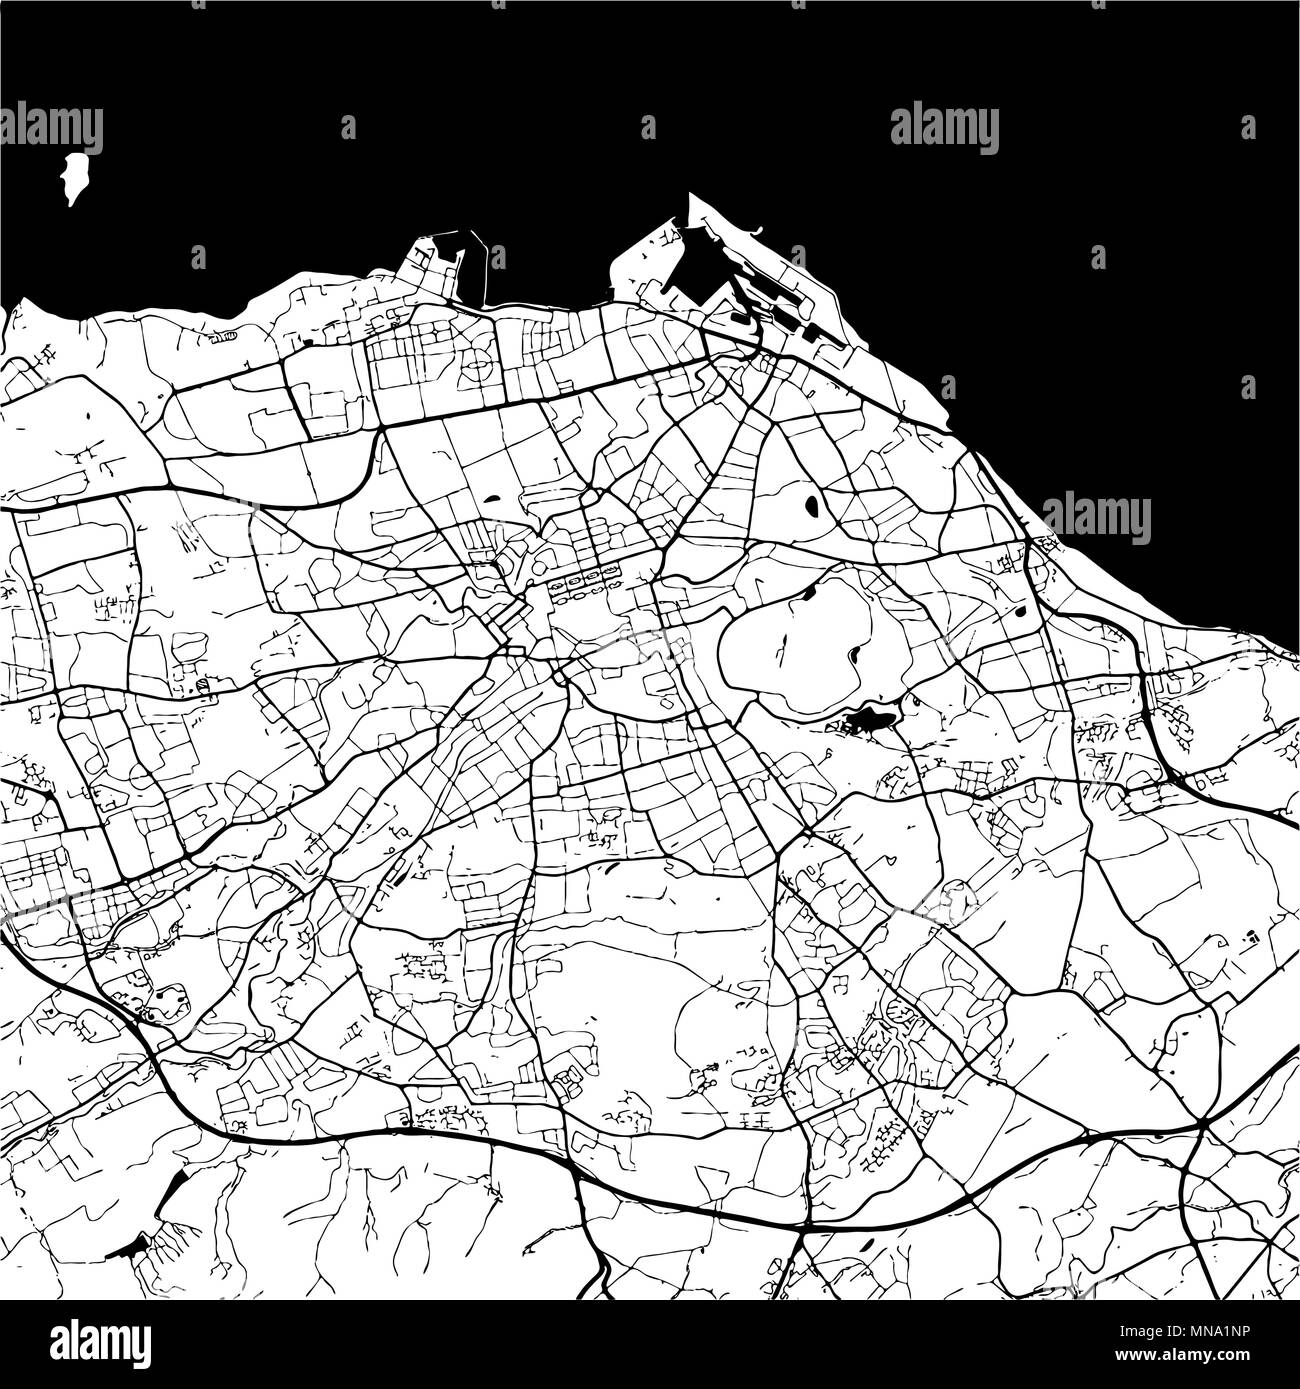 Edimbourg, Ecosse, Monochrome Site oevre, contours vectoriels, version prête pour le changement de couleur, séparés sur blanc Illustration de Vecteur